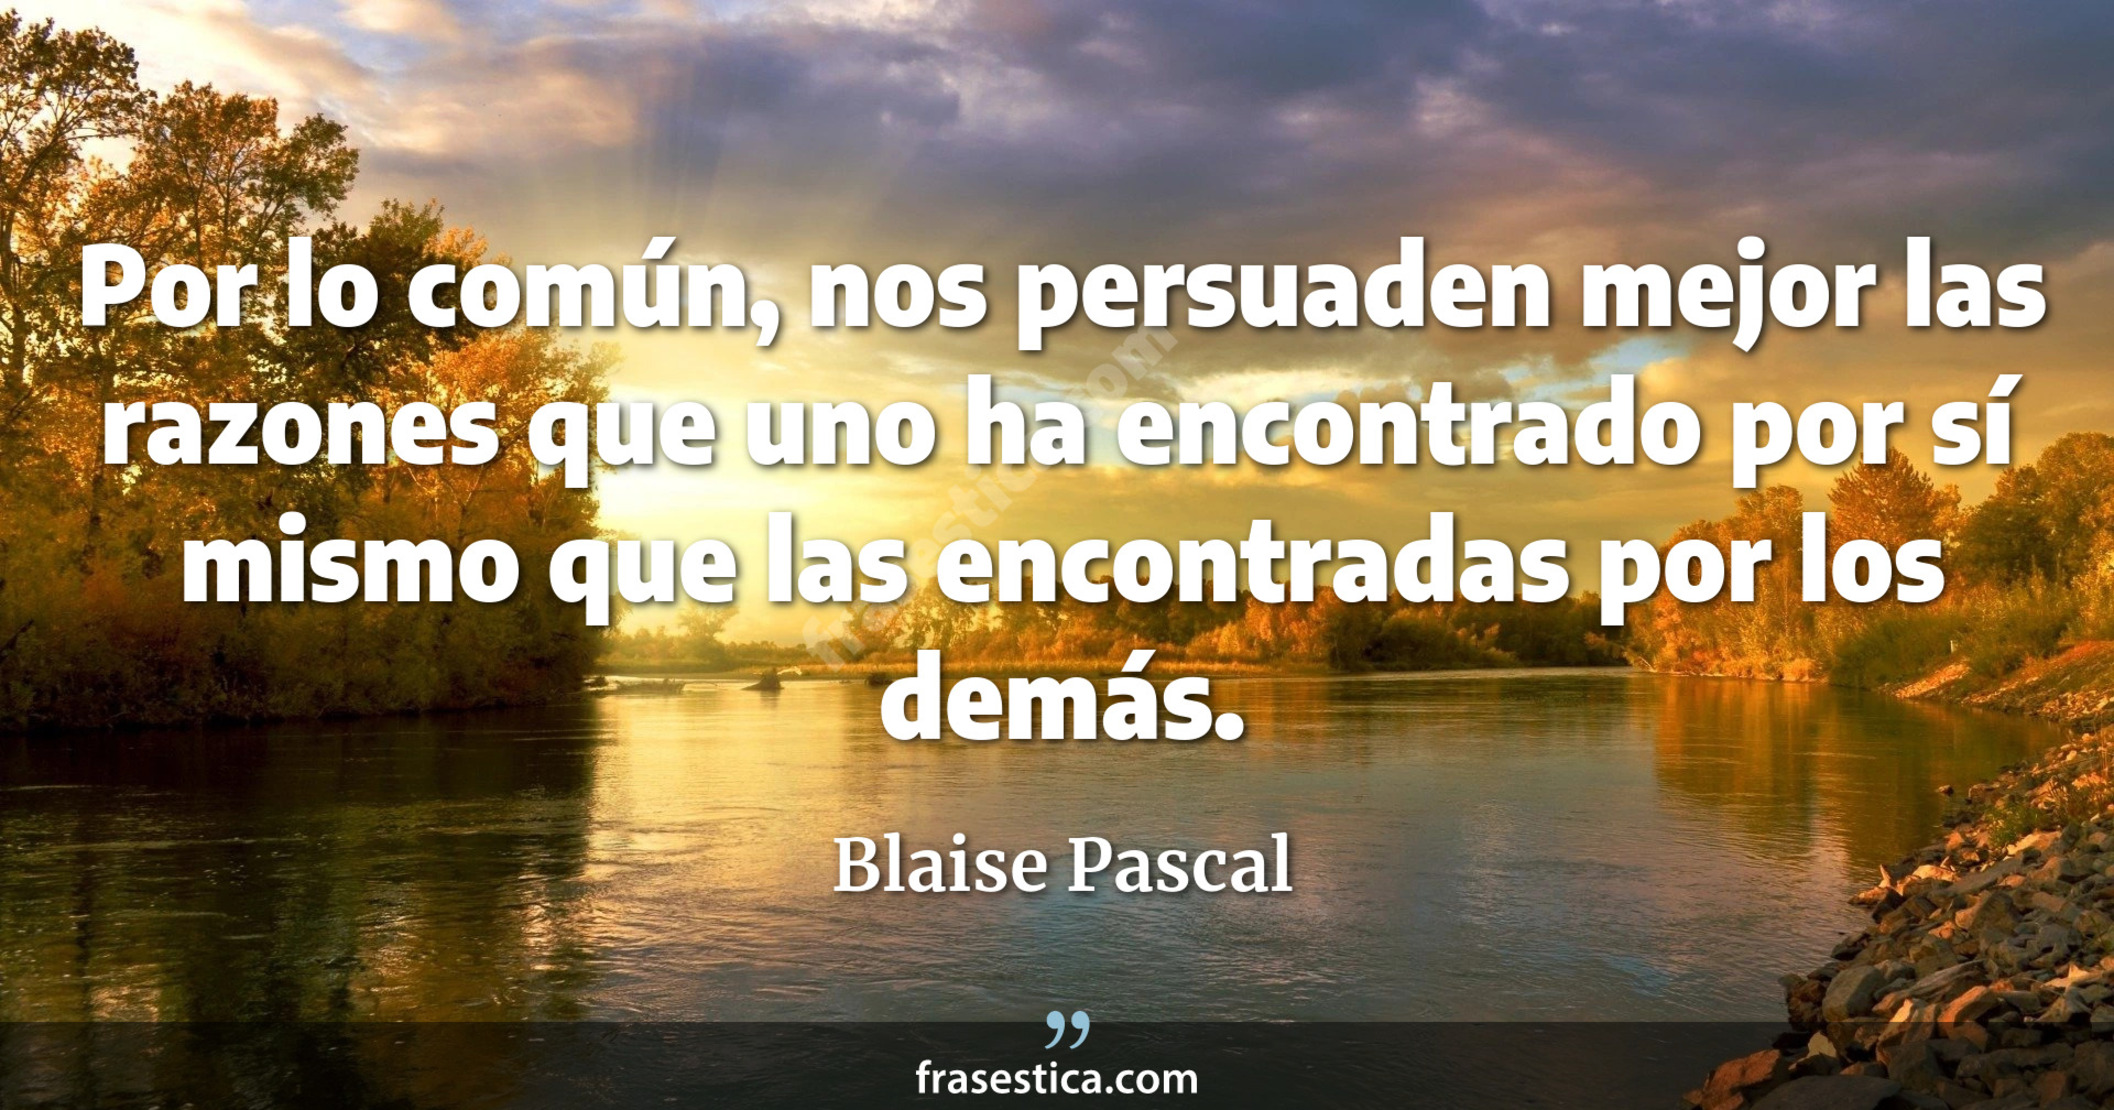 Por lo común, nos persuaden mejor las razones que uno ha encontrado por sí mismo que las encontradas por los demás. - Blaise Pascal